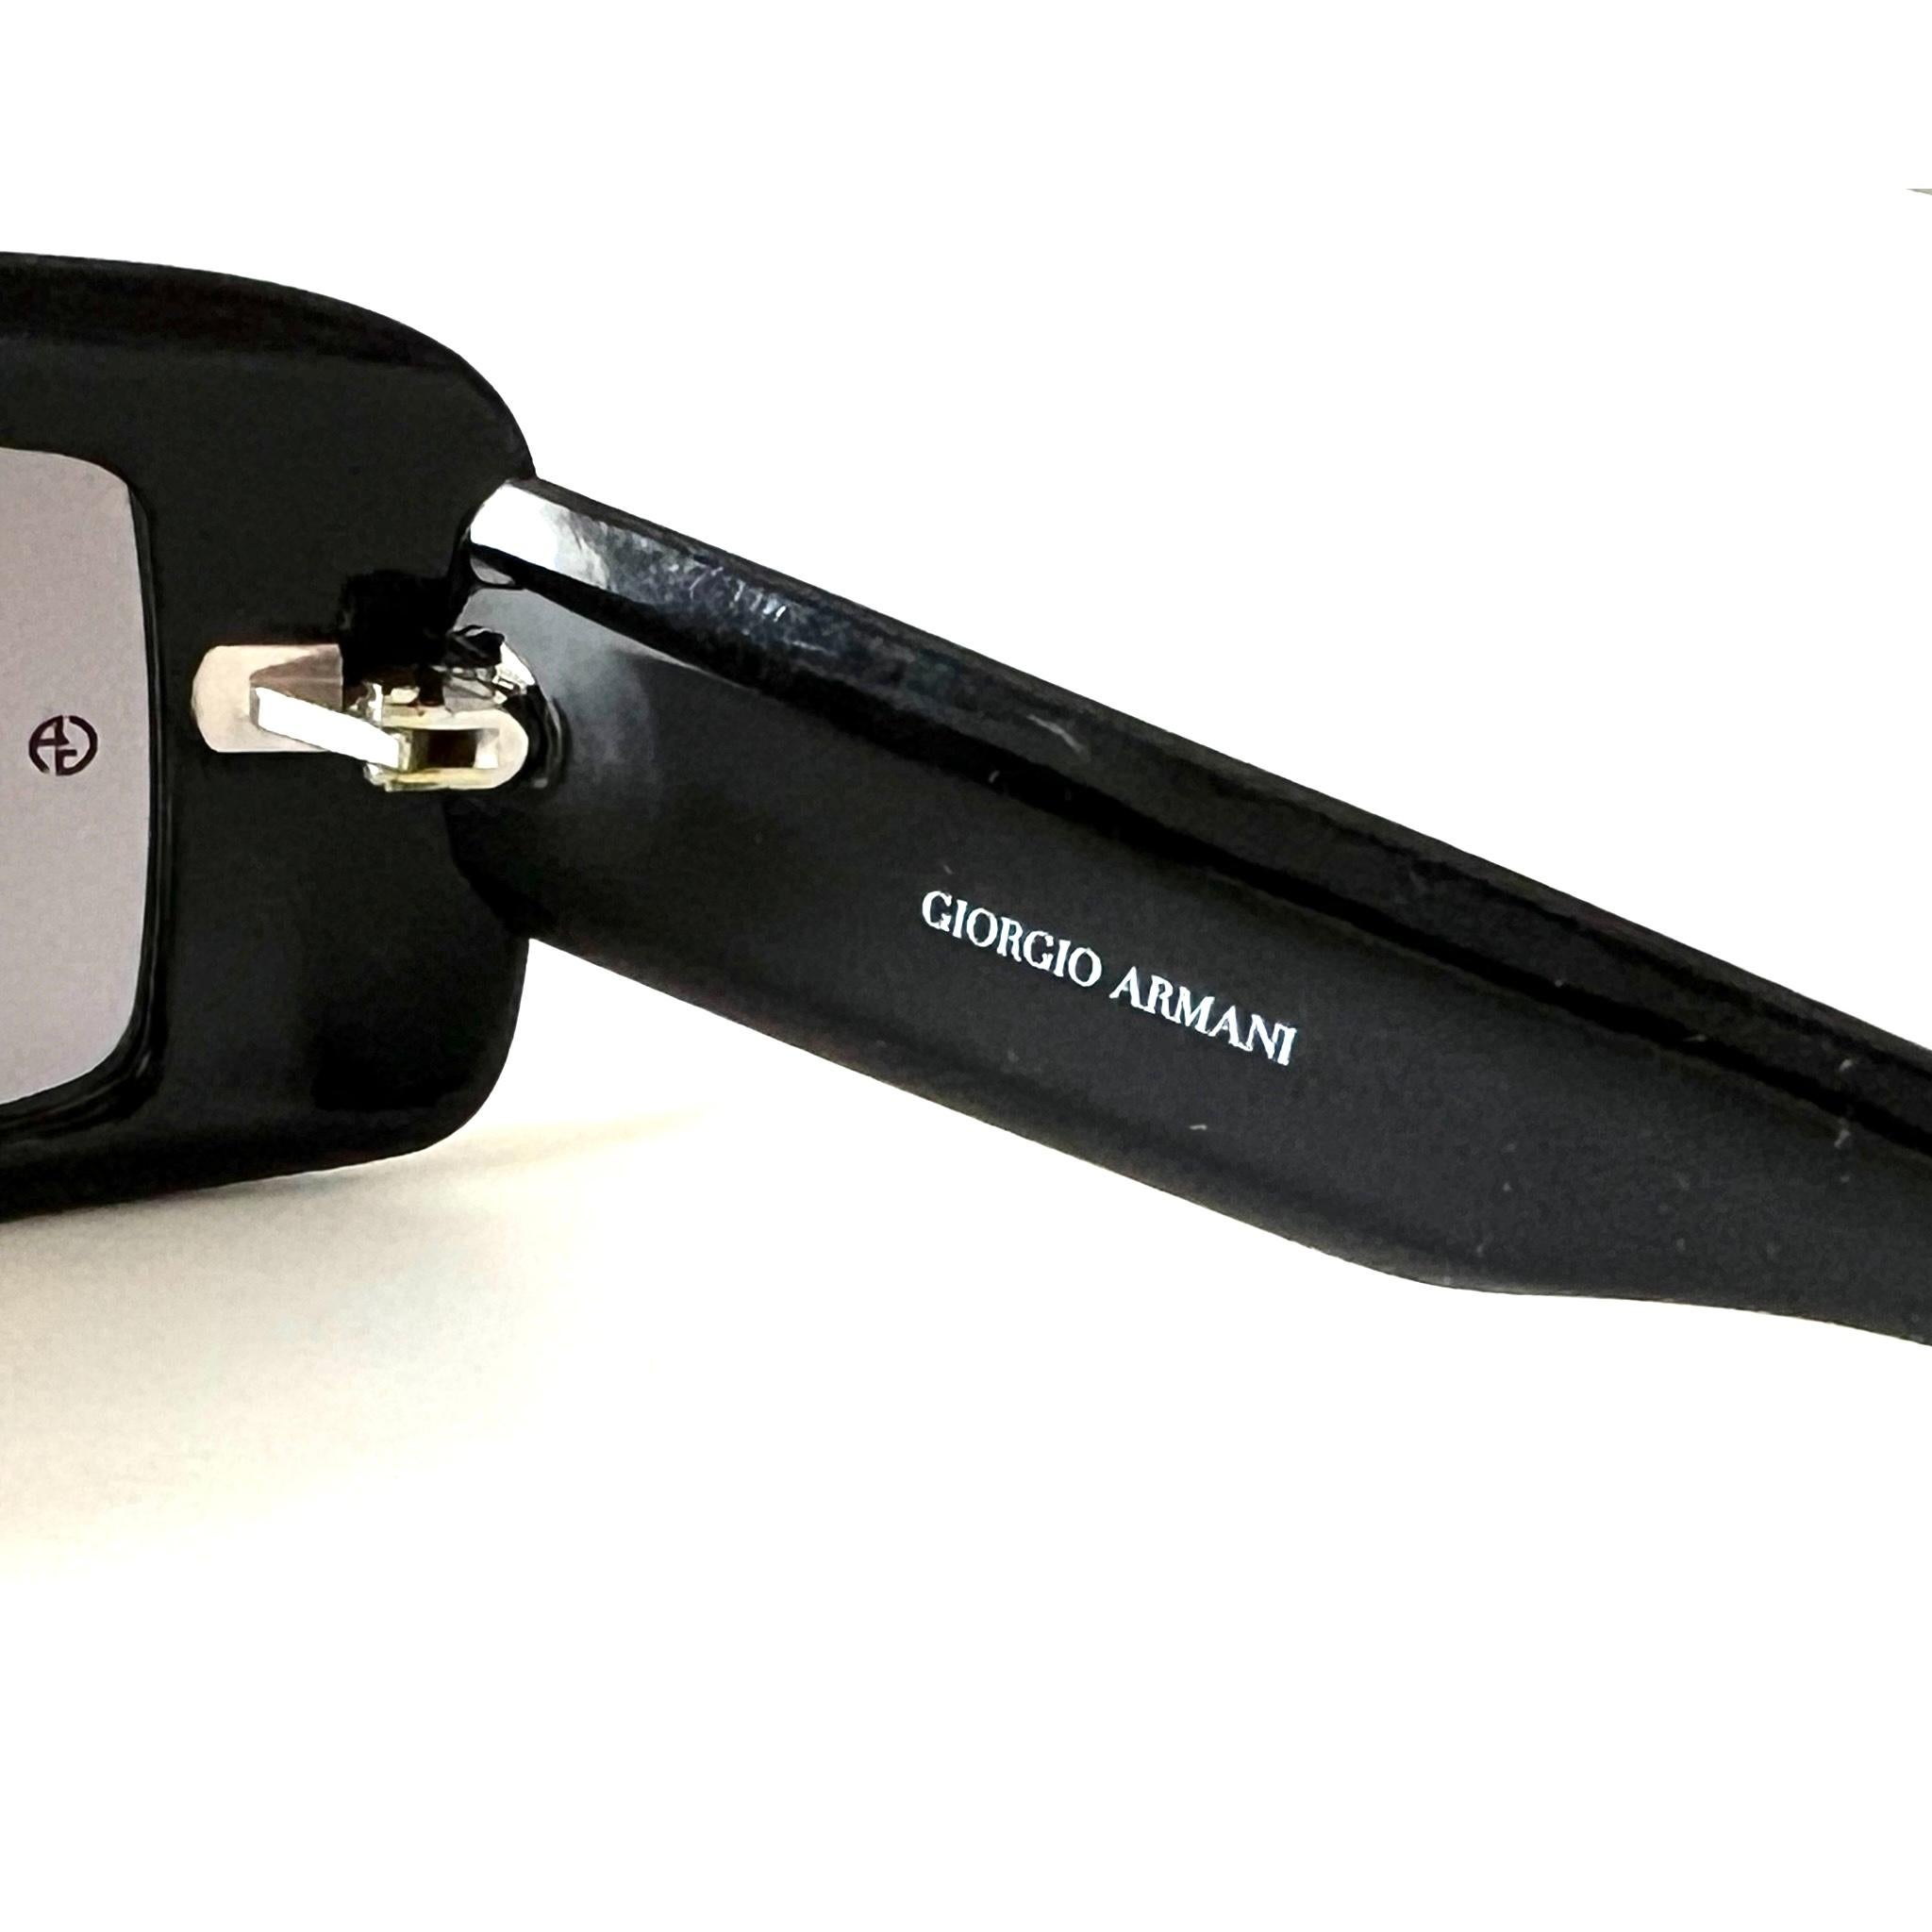 Giorgio Armani New sunglasses  art. 54/N/S col. 807BN (Made in Italy)  For Sale 1